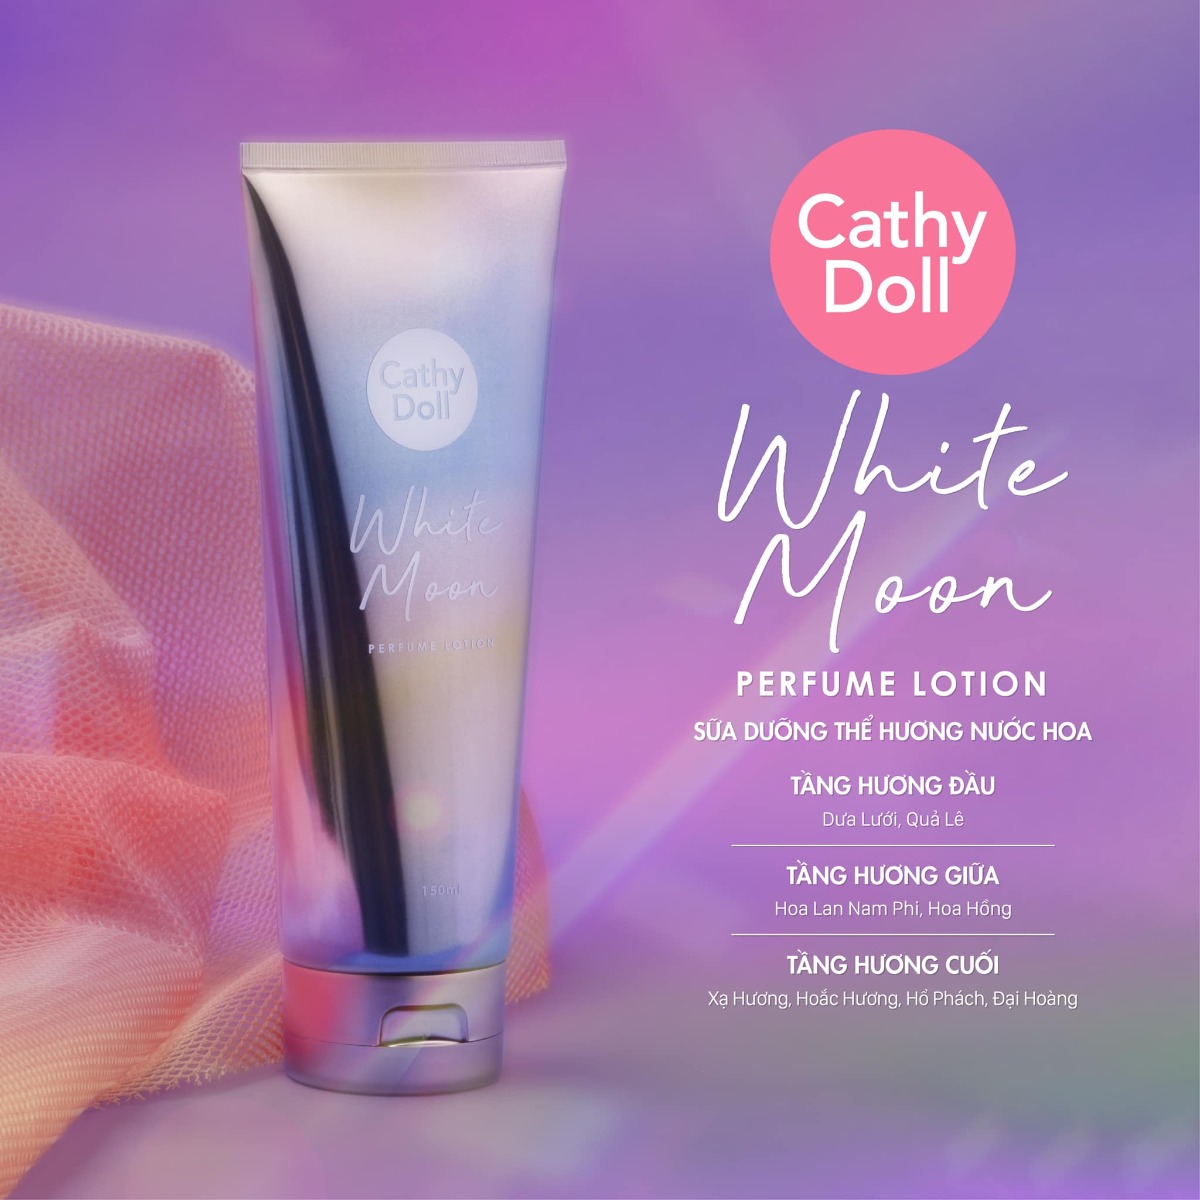 Sữa Dưỡng Thể Hương Nước Hoa Cathy Doll White Moon